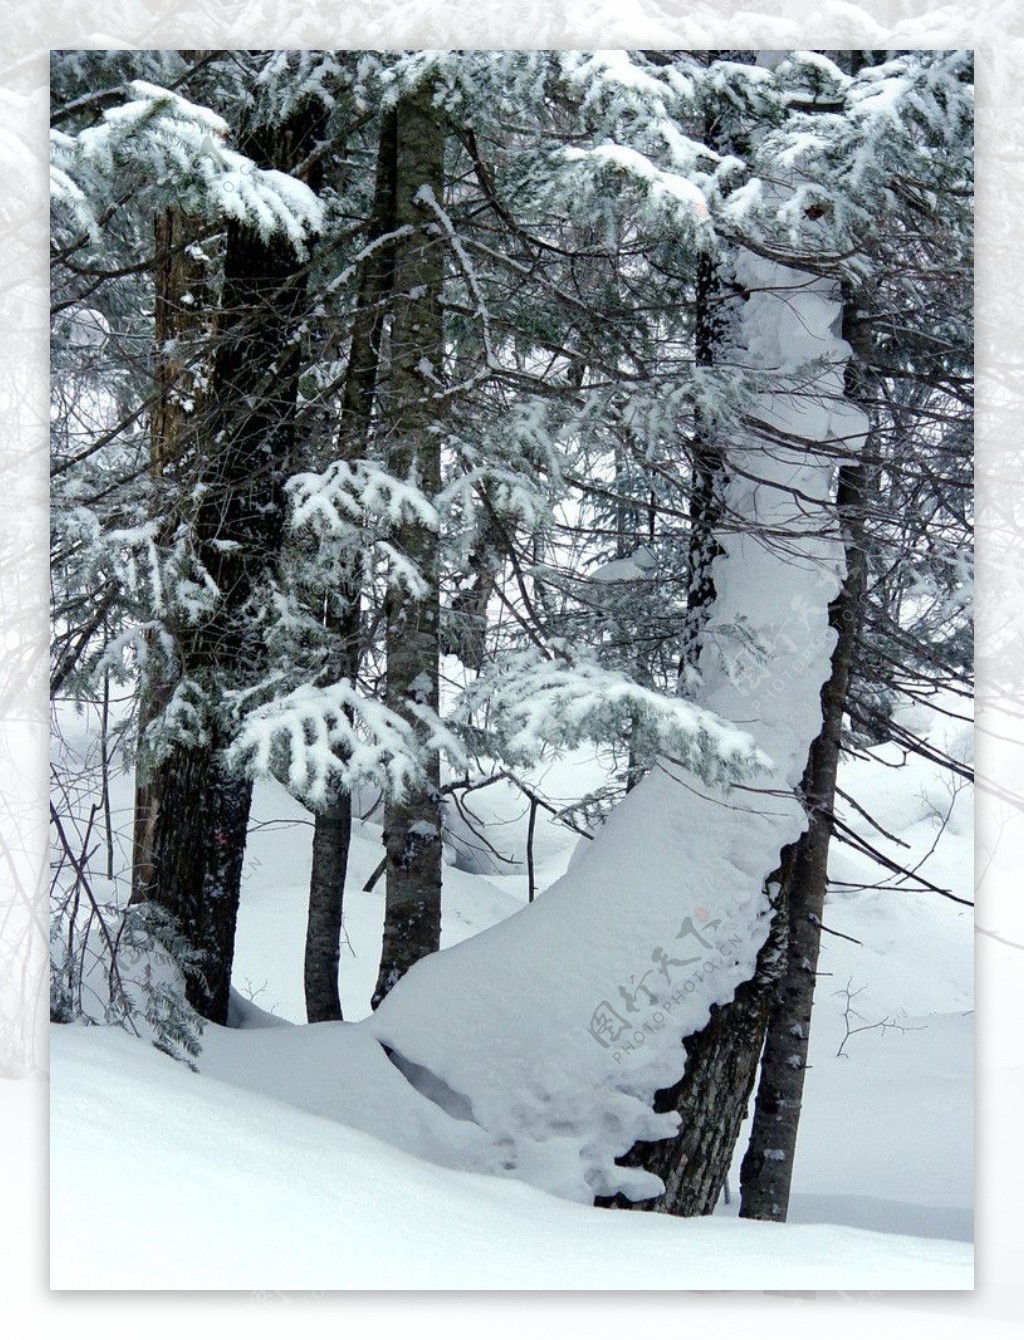 雪乡雪松林图片